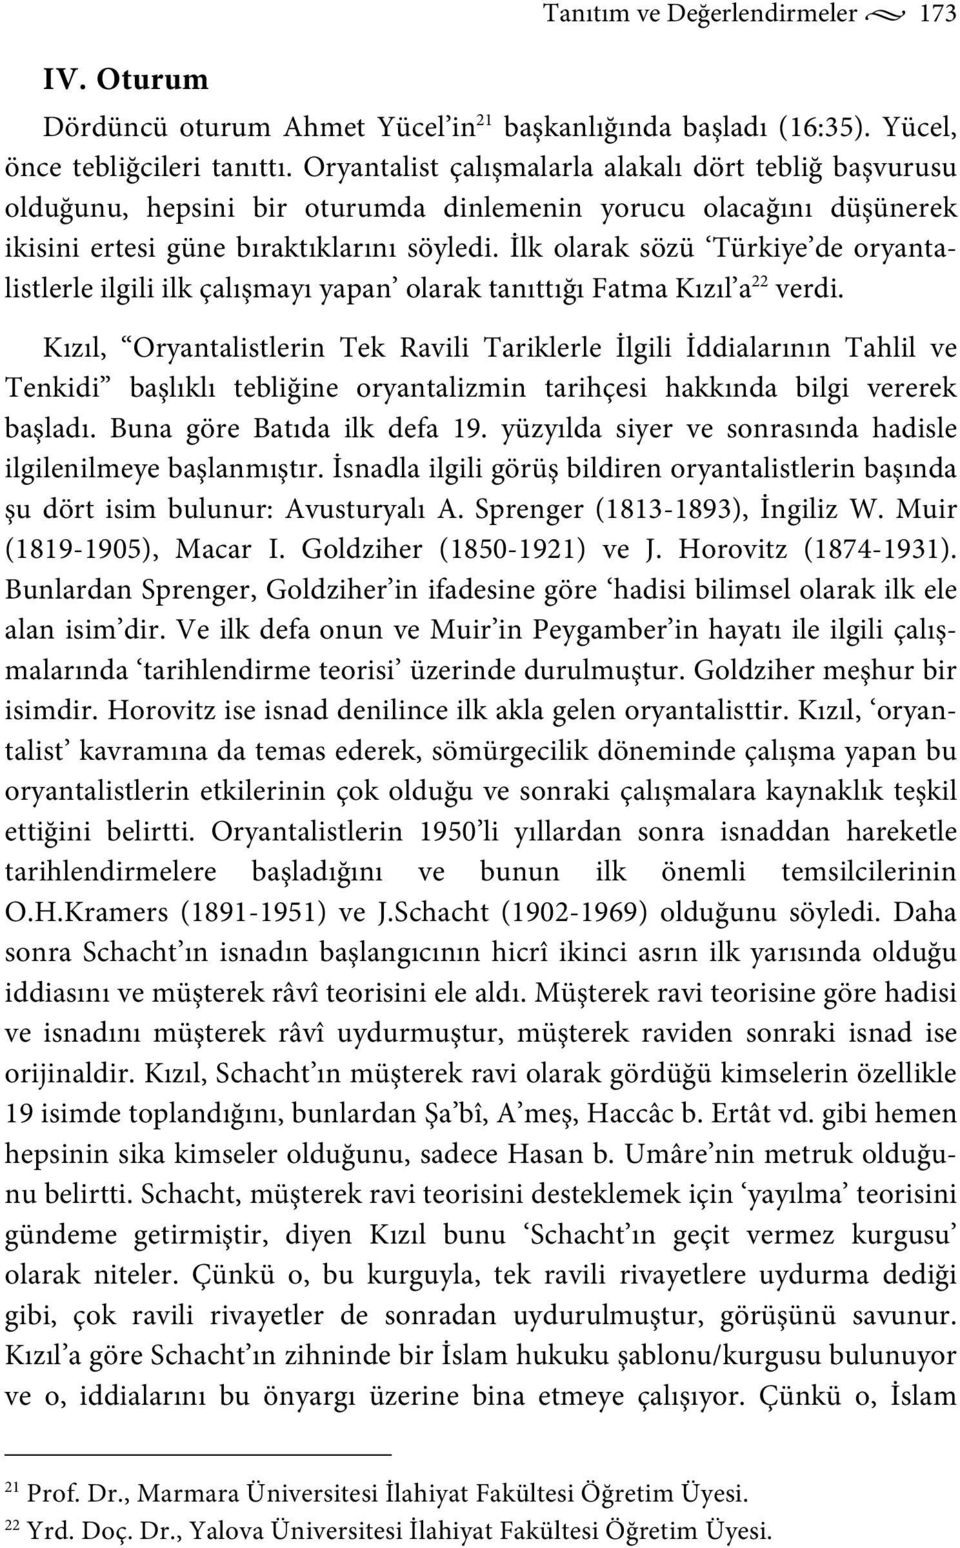 İlk olarak sözü Türkiye de oryantalistlerle ilgili ilk çalışmayı yapan olarak tanıttığı Fatma Kızıl a 22 verdi.